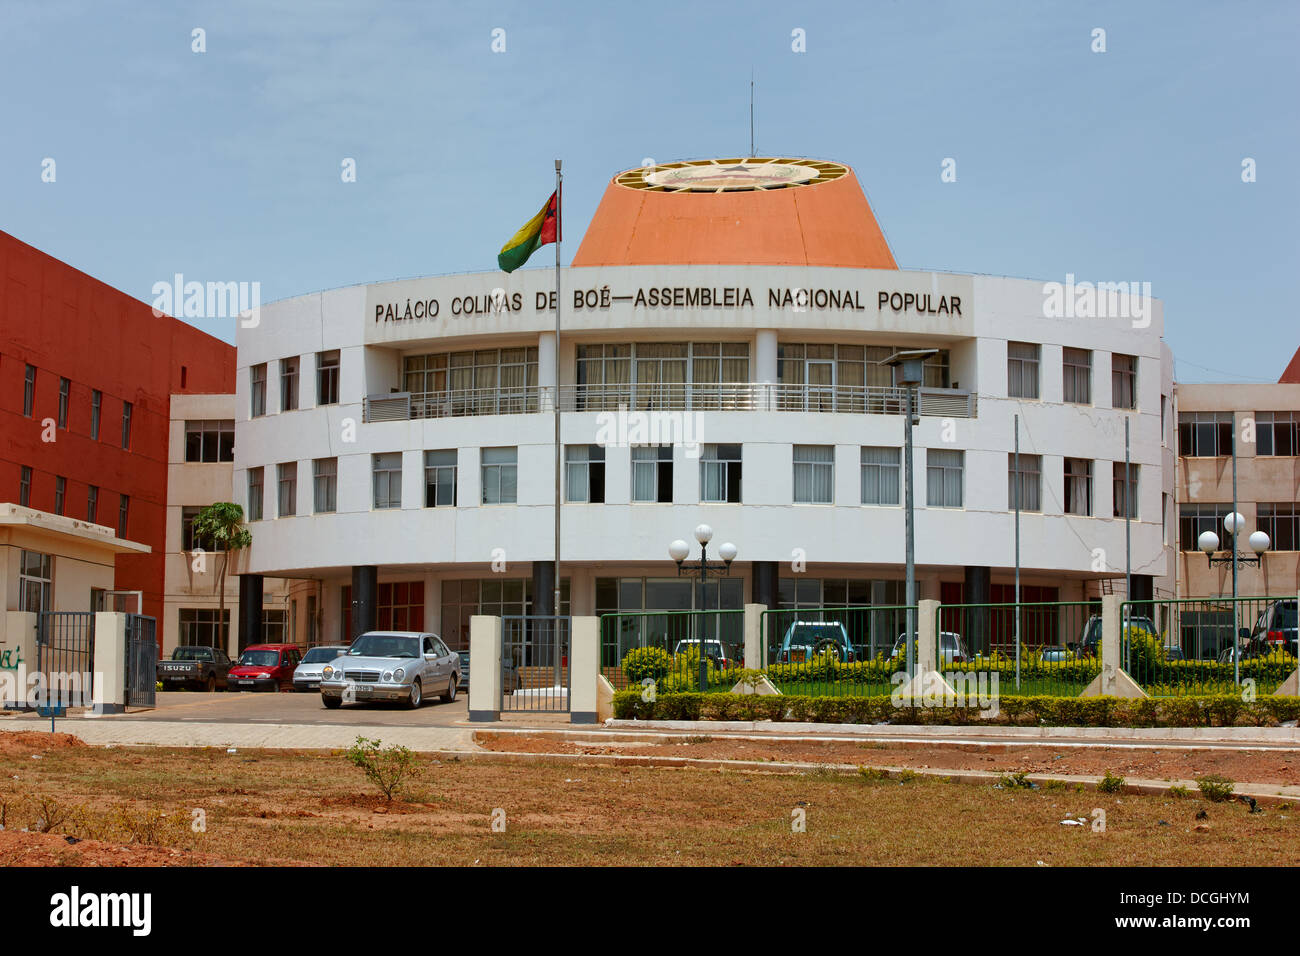 Palacio Colinas De Boe-Assembleia Nacional Popular (National Assembly Palace), Bissau, Guinea-Bissau, Africa Stock Photo